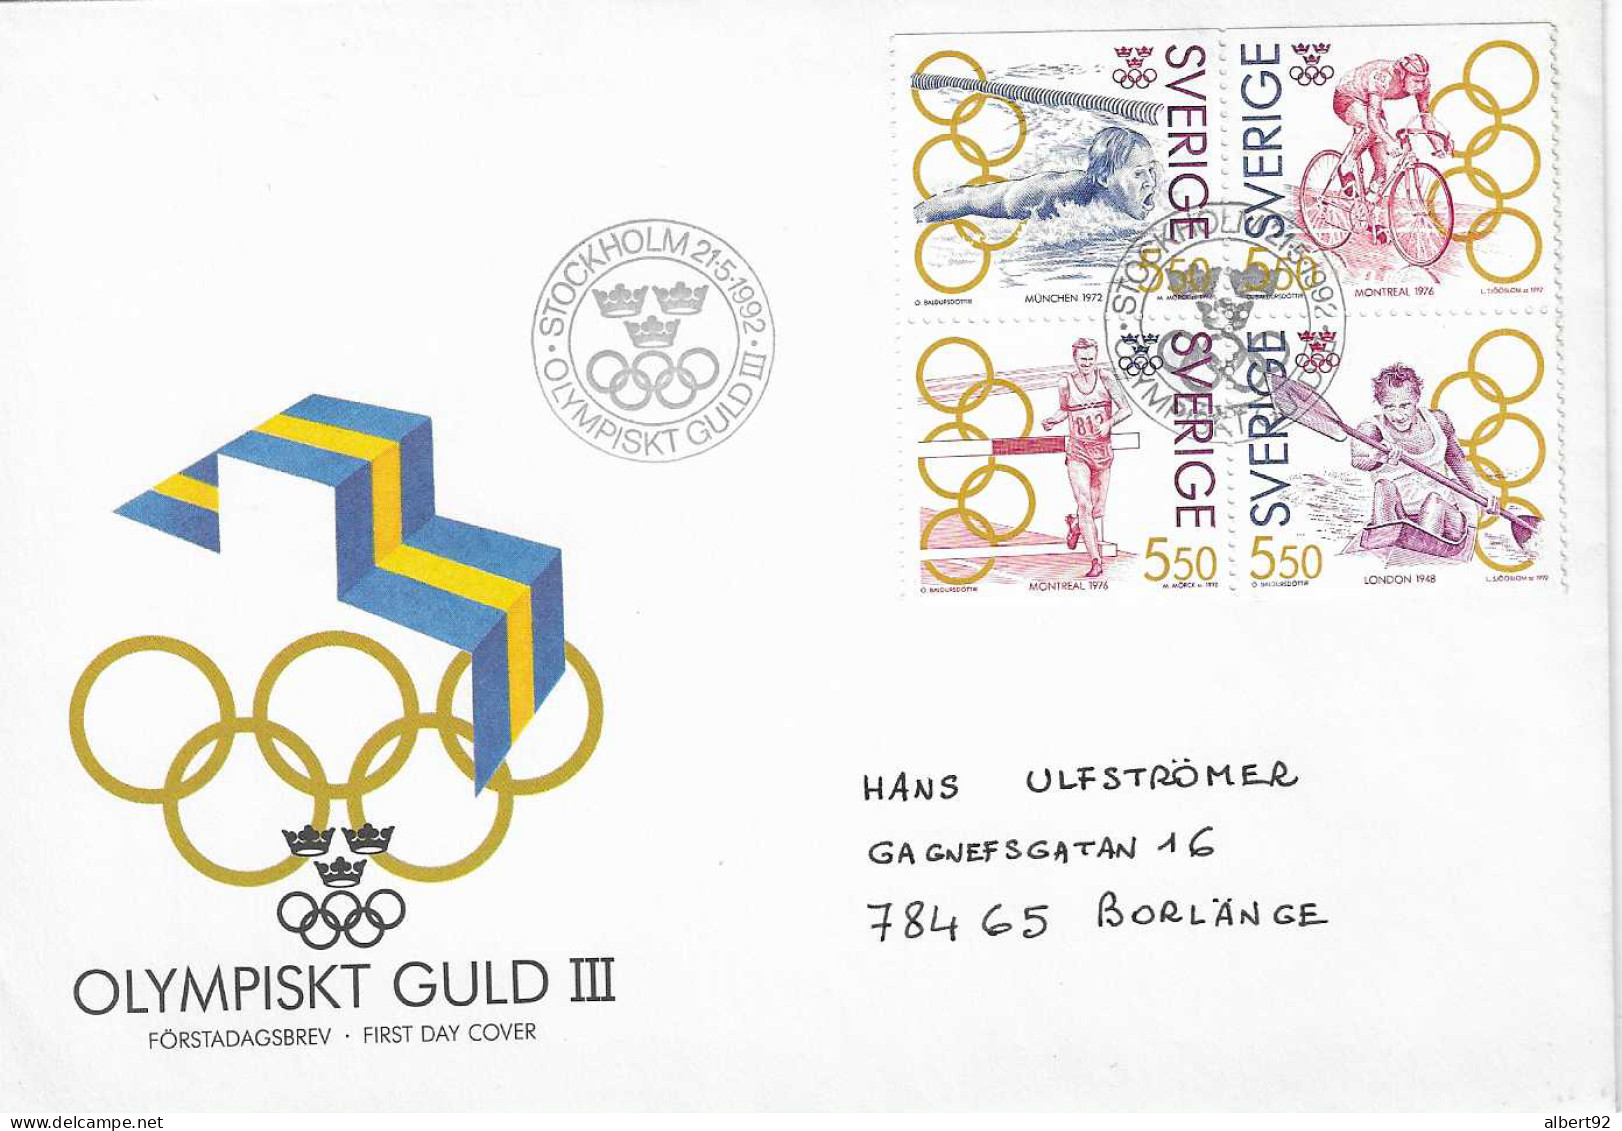 1992 Médaillés OR Suédois Aux Jeux Olympiques: Canoë (Londres 1948) Athlétisme, Cyclisme (Montréal 1976) Natation (1972) - Invierno 1932: Lake Placid